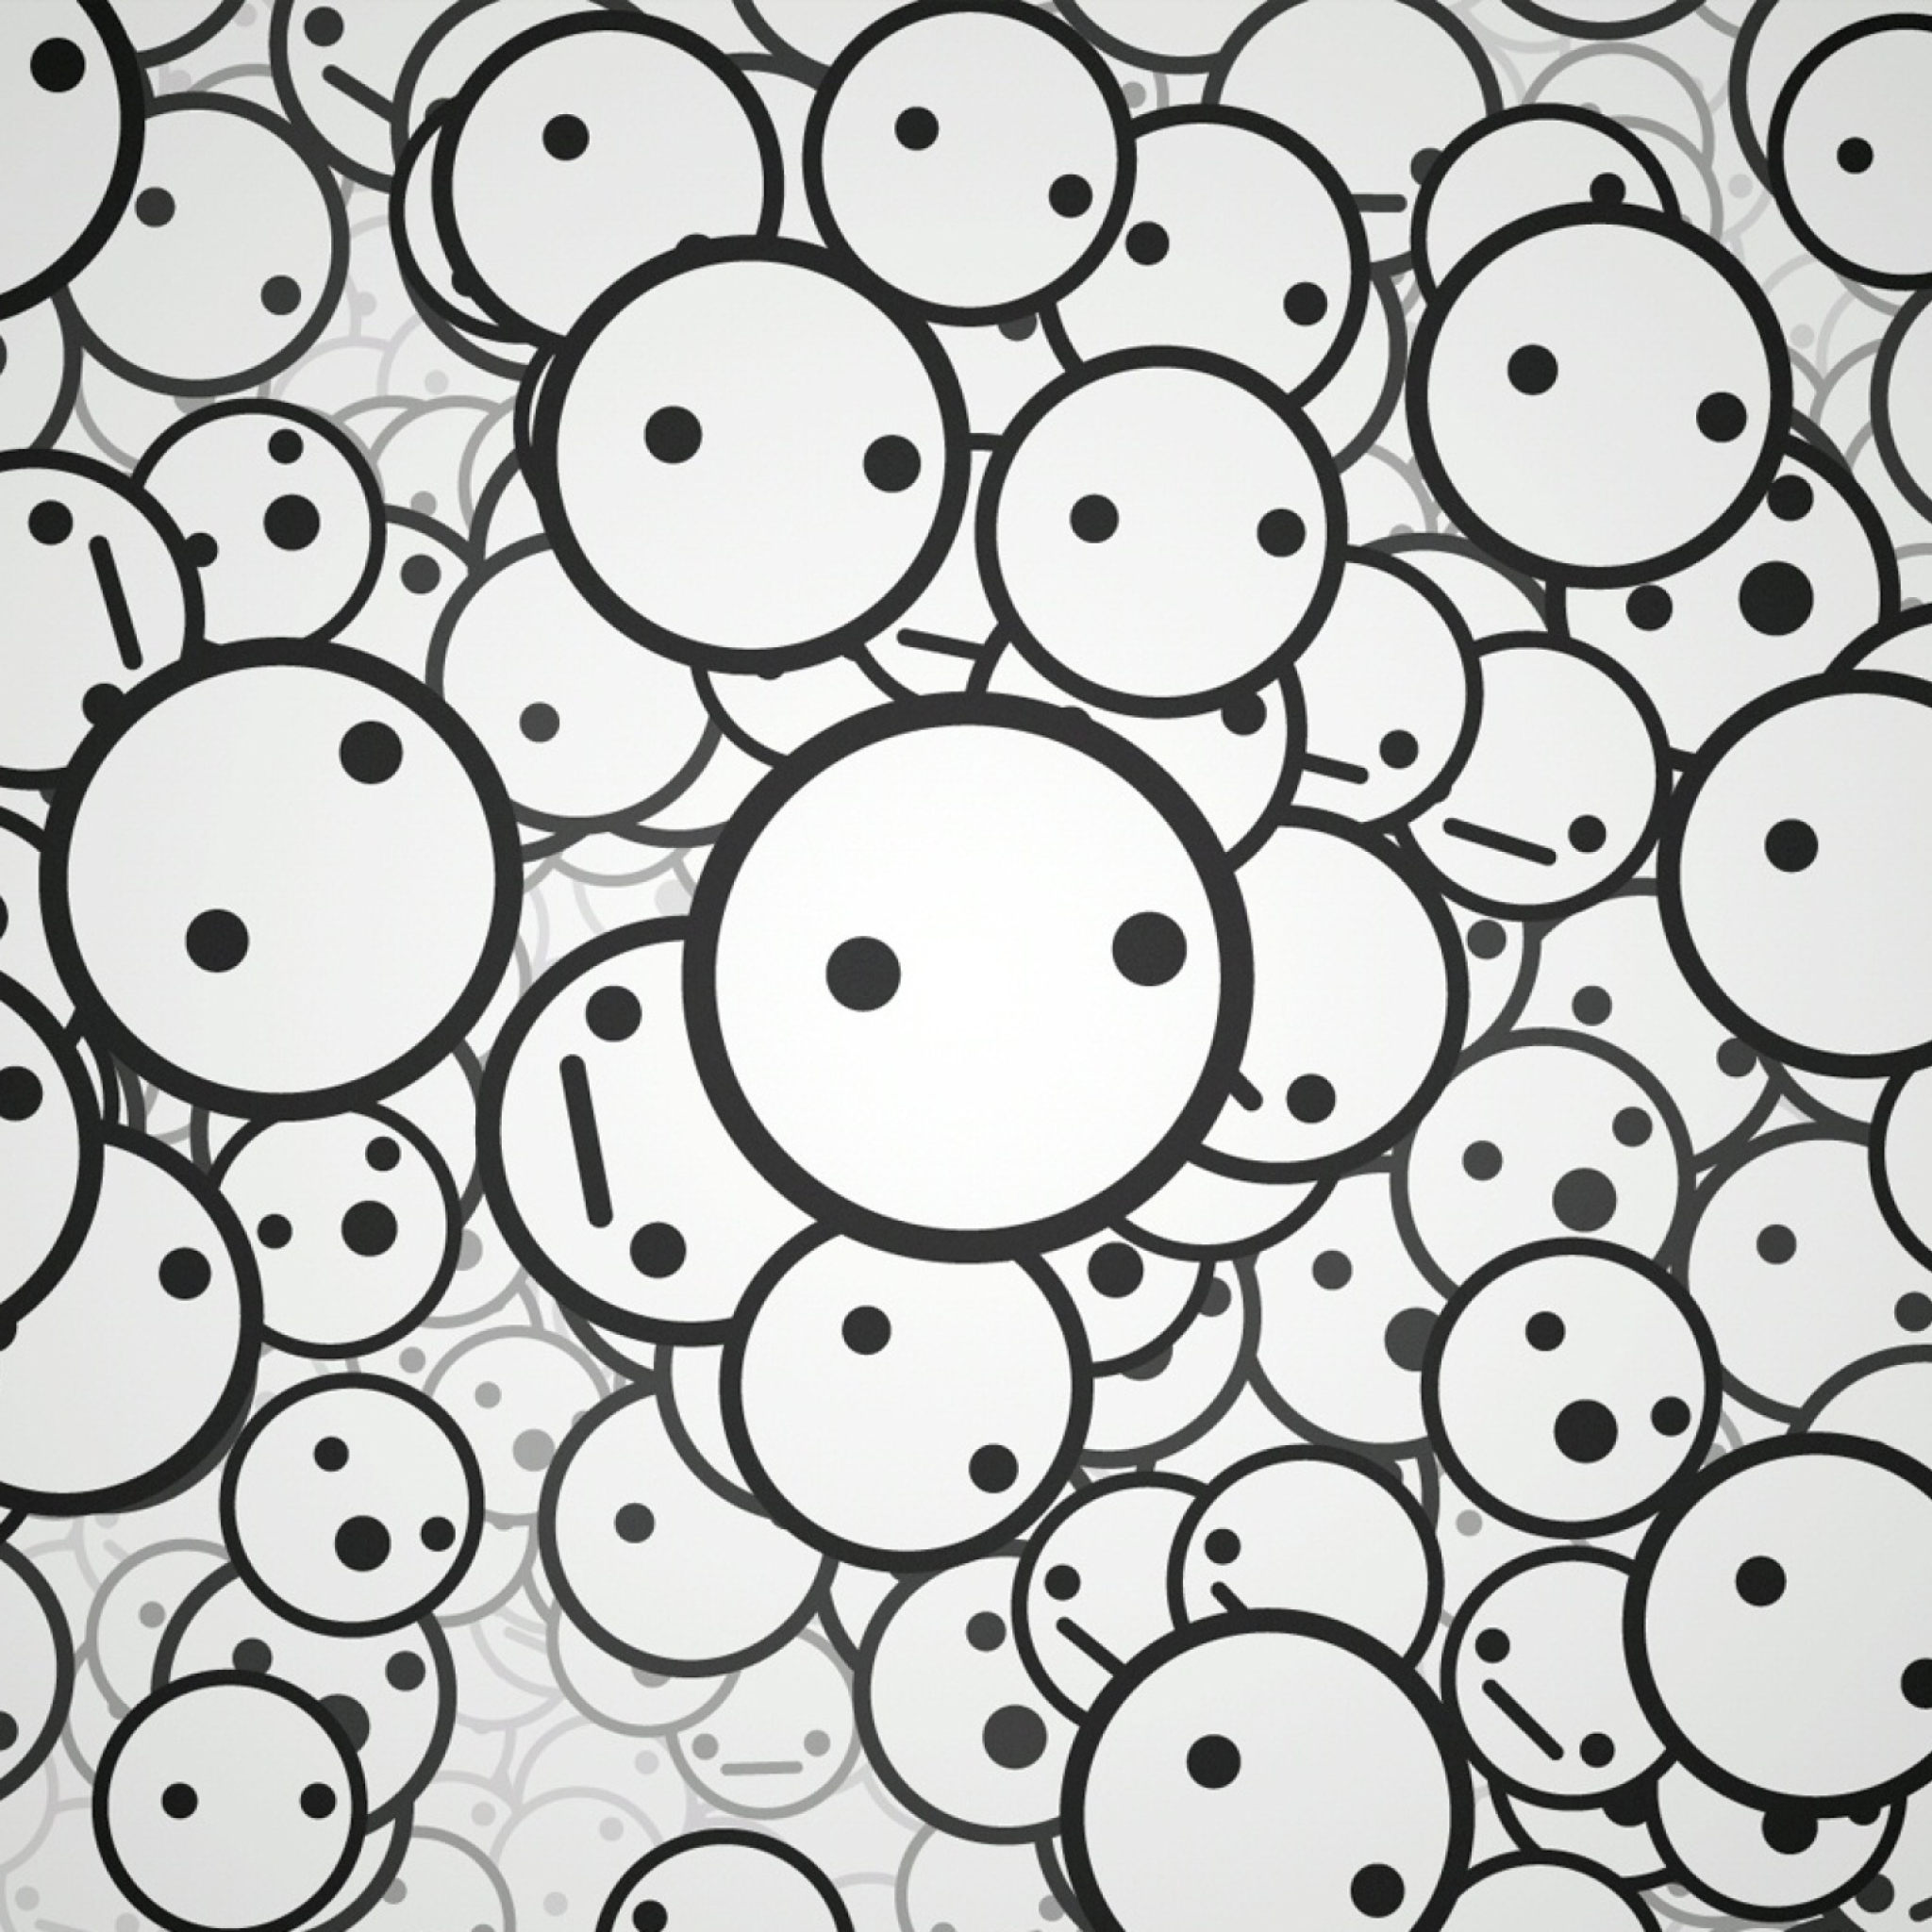 Das Circle Faces Wallpaper 2048x2048